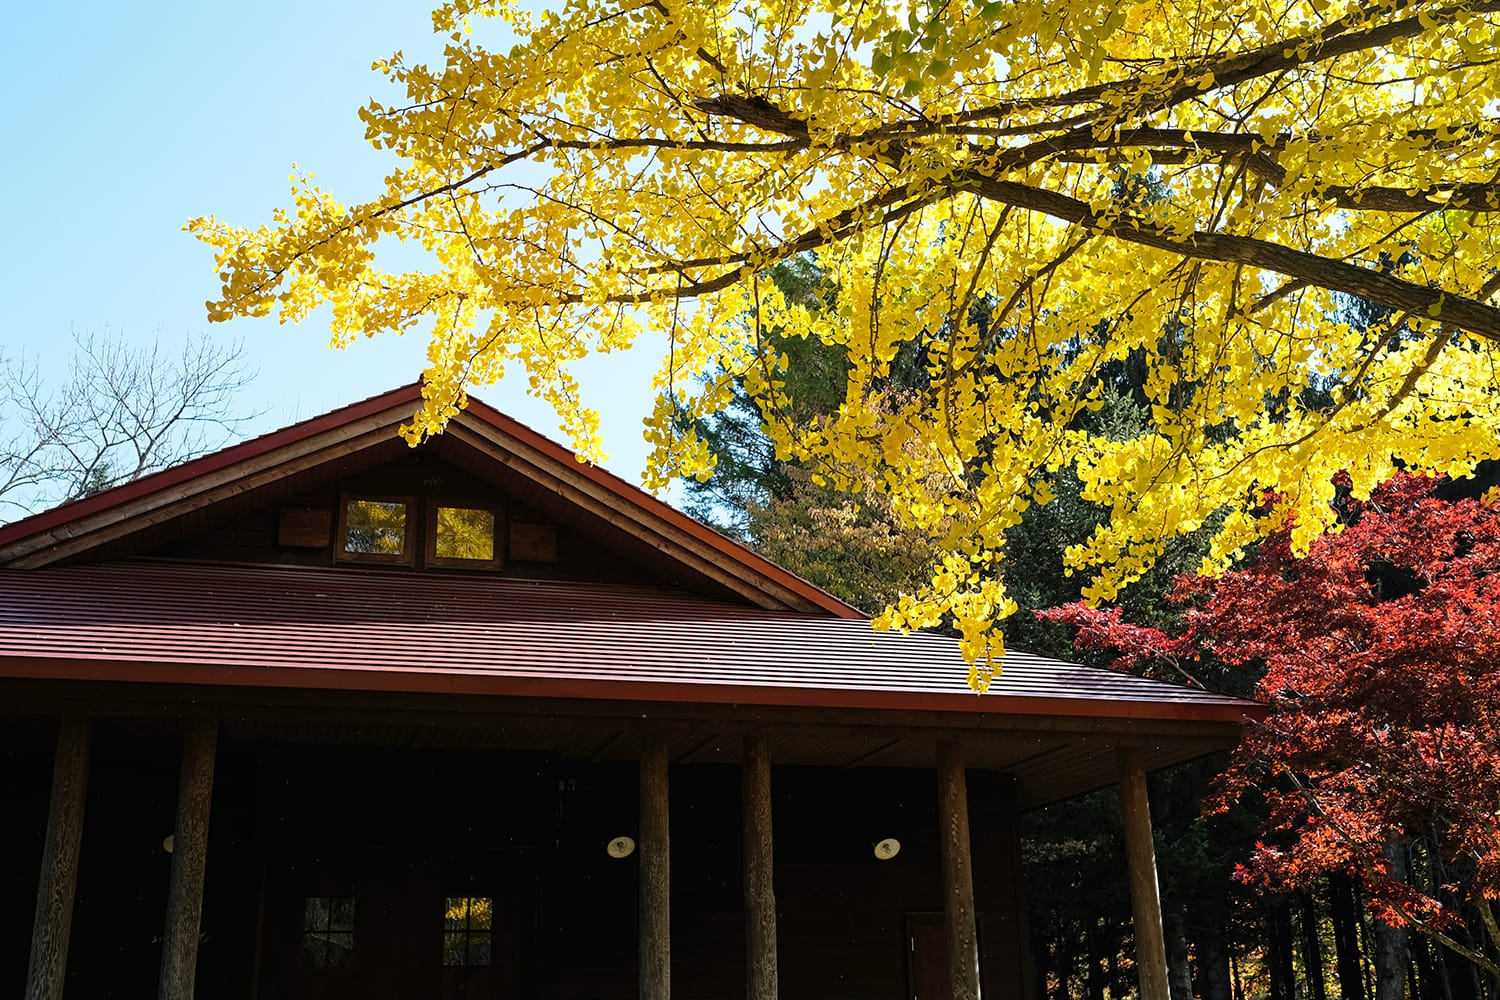 カフェアルテの赤い屋根とイチョウの黄葉